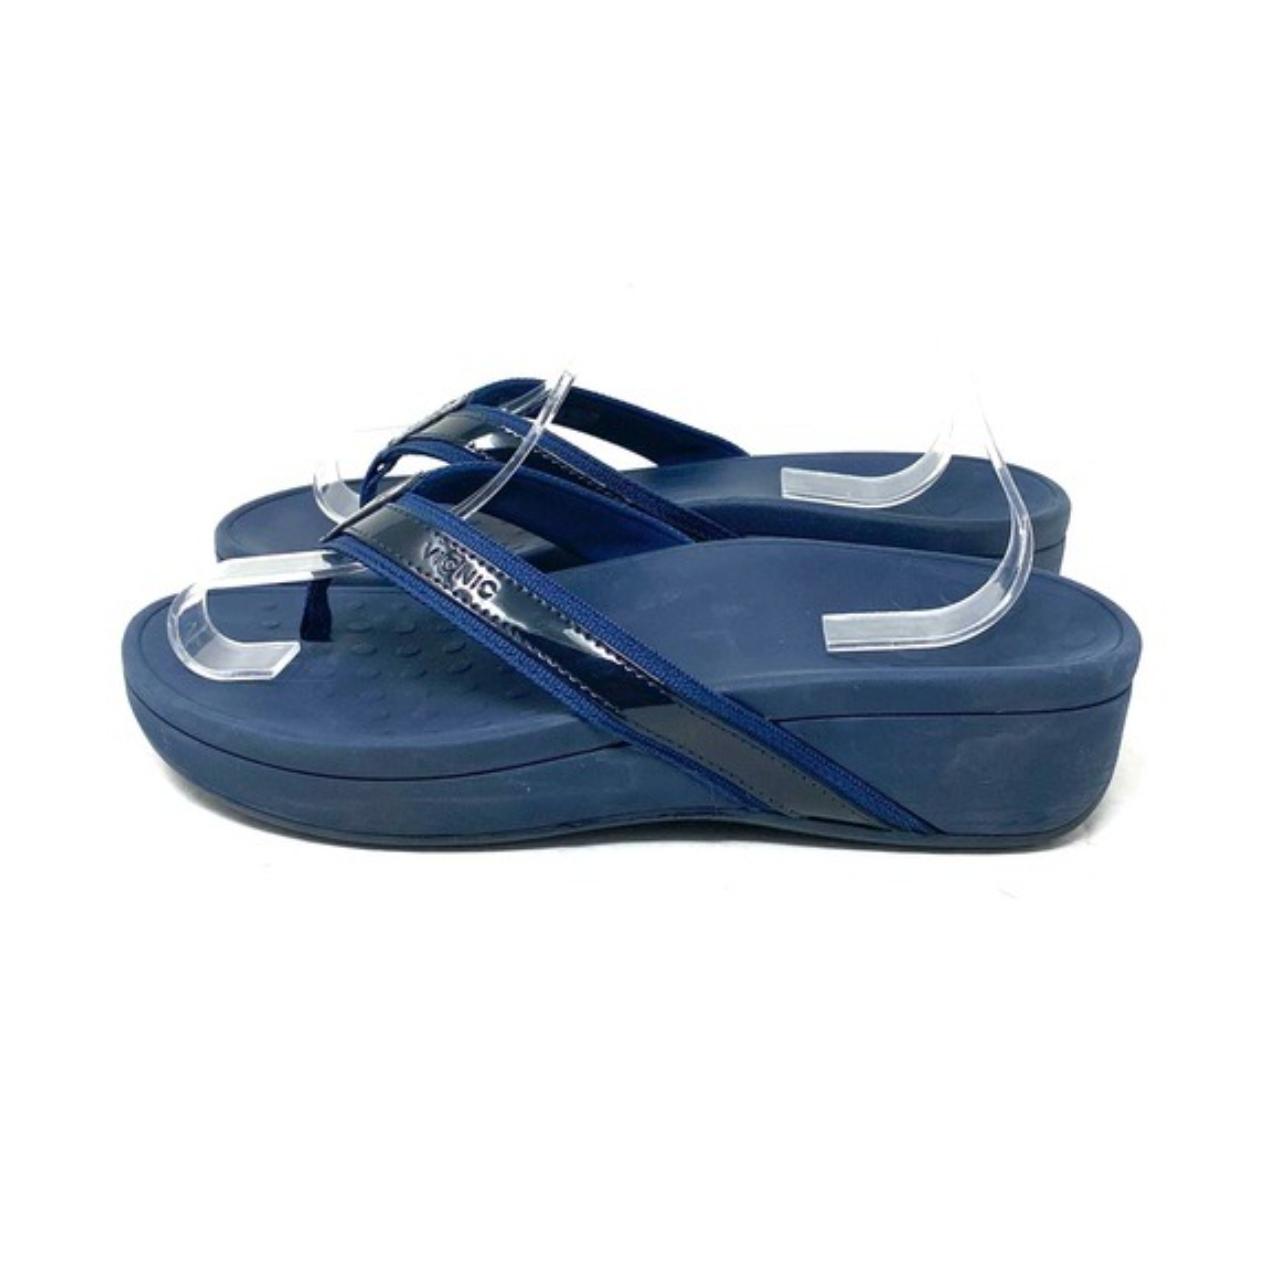 Vionic navy blue thong sandals. Women's size 8.... - Depop